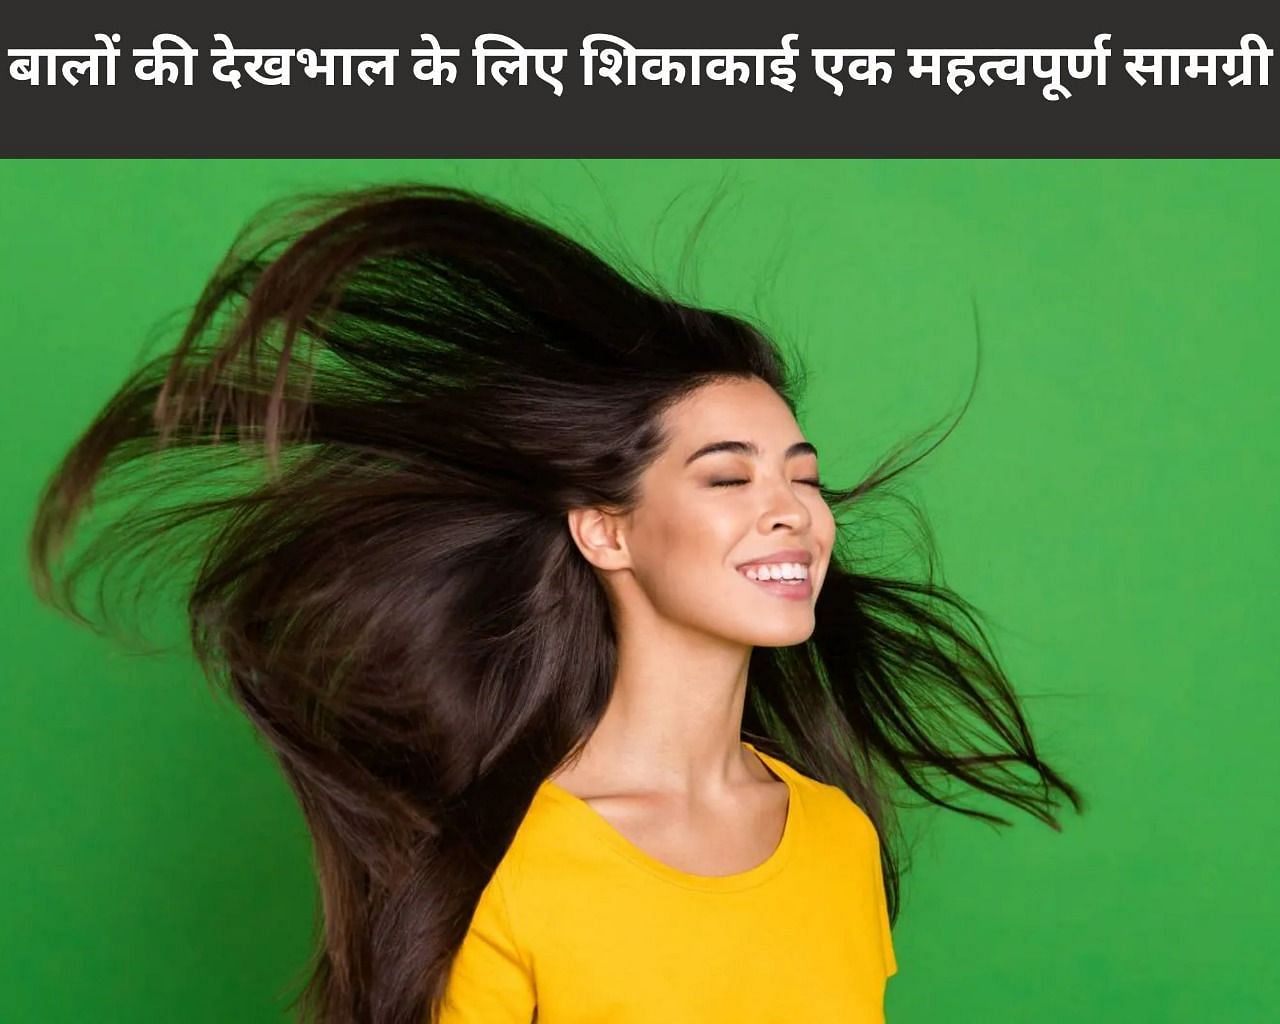 4 Benefits Of Shikakai For Hair Care In Hindi: बालों की देखभाल के लिए  शिकाकाई एक महत्वपूर्ण सामग्री